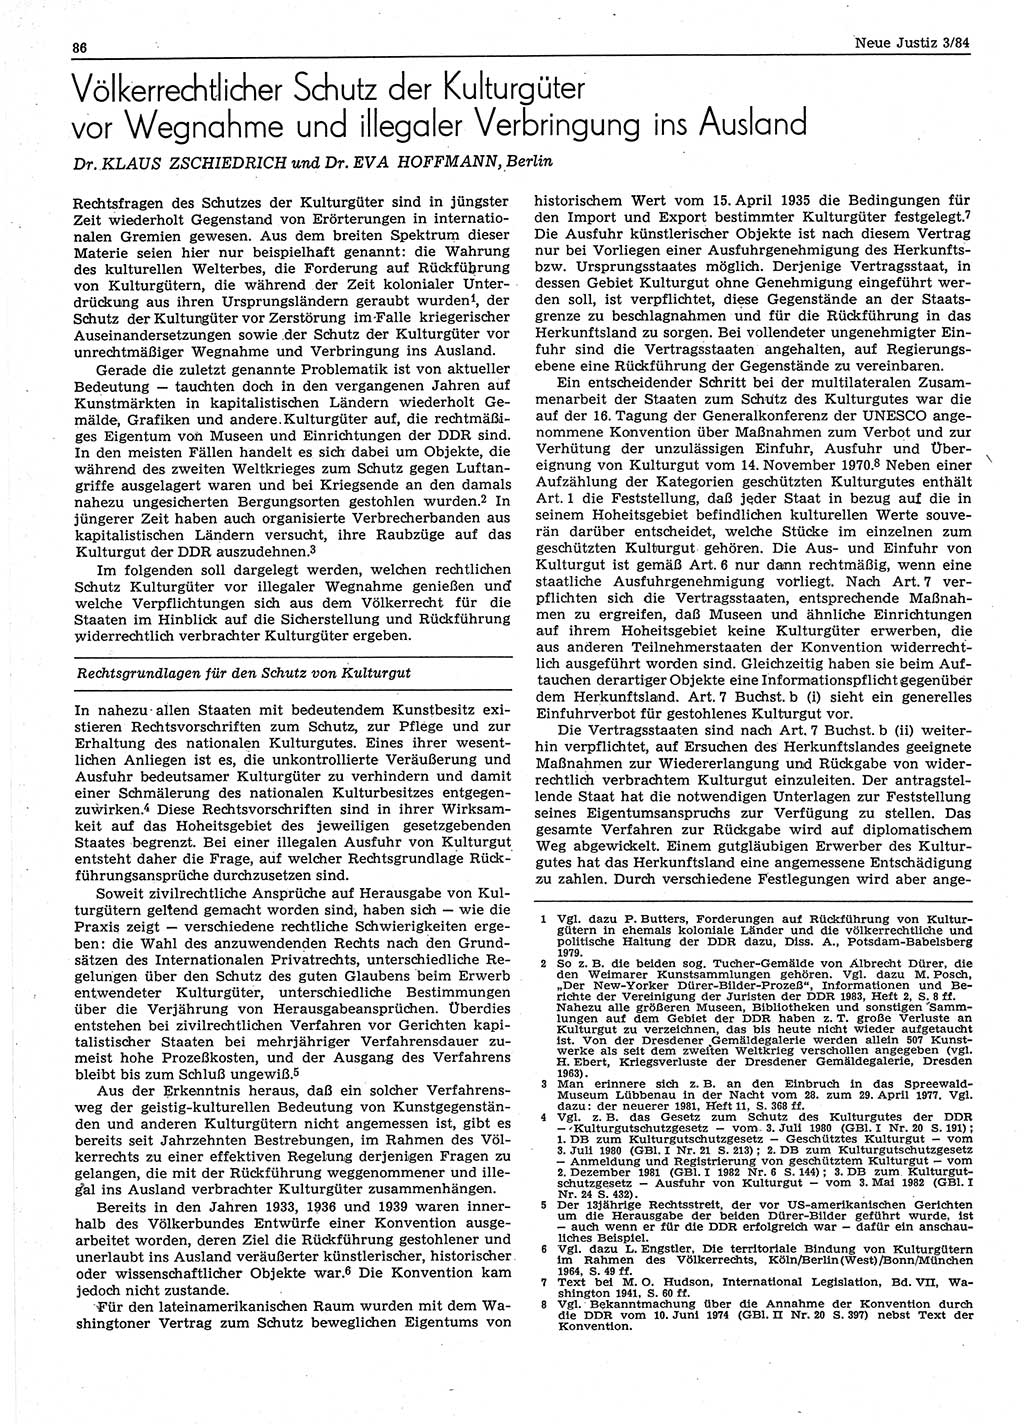 Neue Justiz (NJ), Zeitschrift für sozialistisches Recht und Gesetzlichkeit [Deutsche Demokratische Republik (DDR)], 38. Jahrgang 1984, Seite 86 (NJ DDR 1984, S. 86)